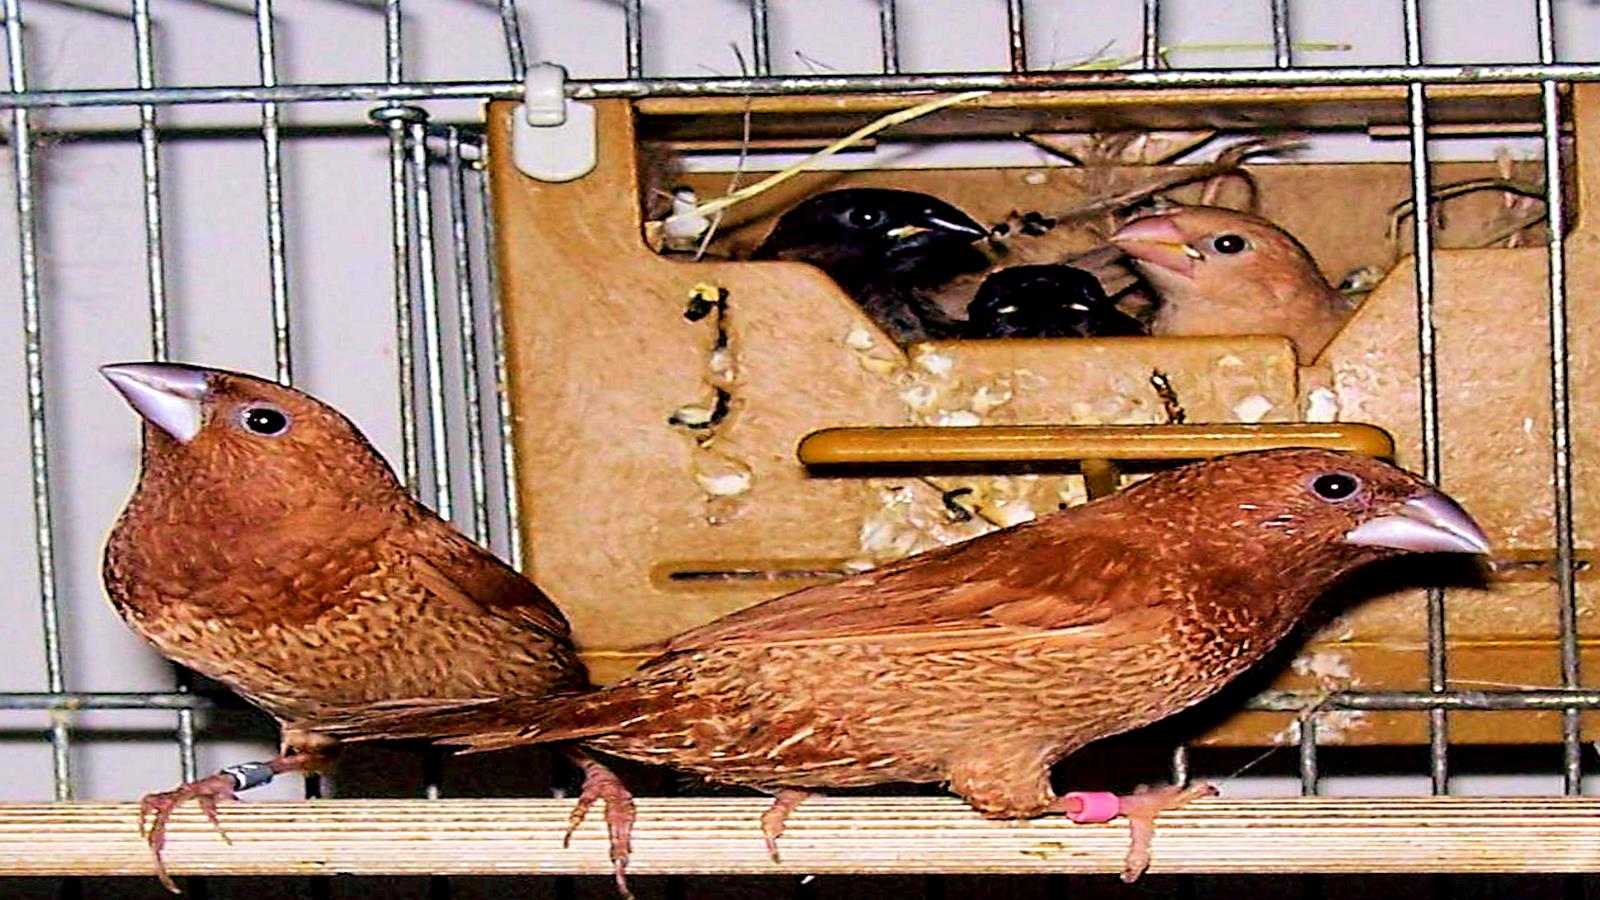  يمكن التخلص من القيود الوراثية لقدرات تعلم طيور الشرشور البنغالية للتغريد بتكييف التعليم ليناسب الميول الفطرية للطيور (بيكسابي)